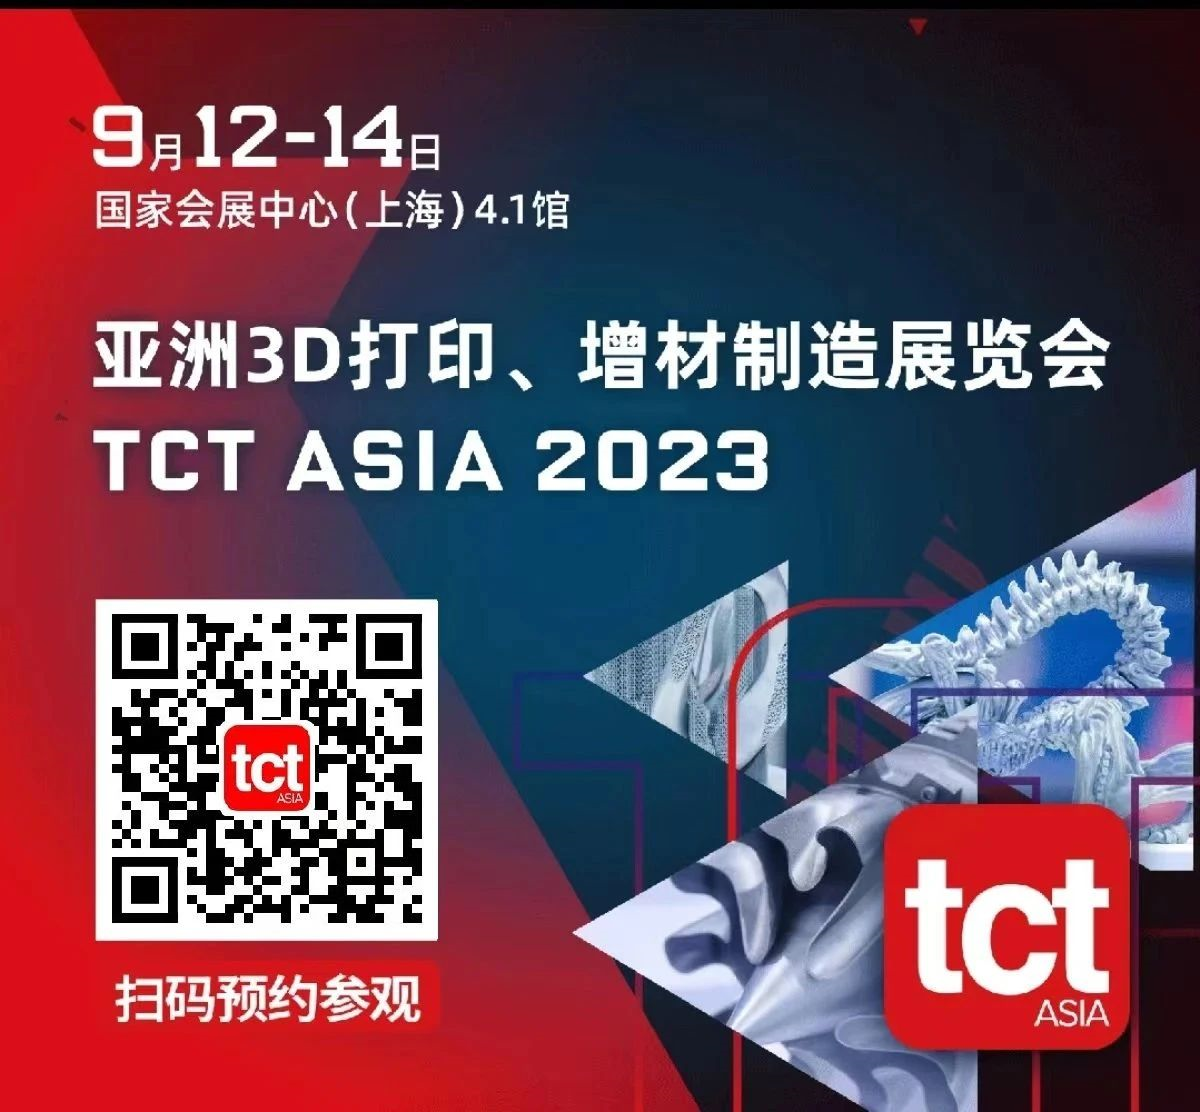 展會邀請｜山東雷石與您相約2023 TCT亞洲展